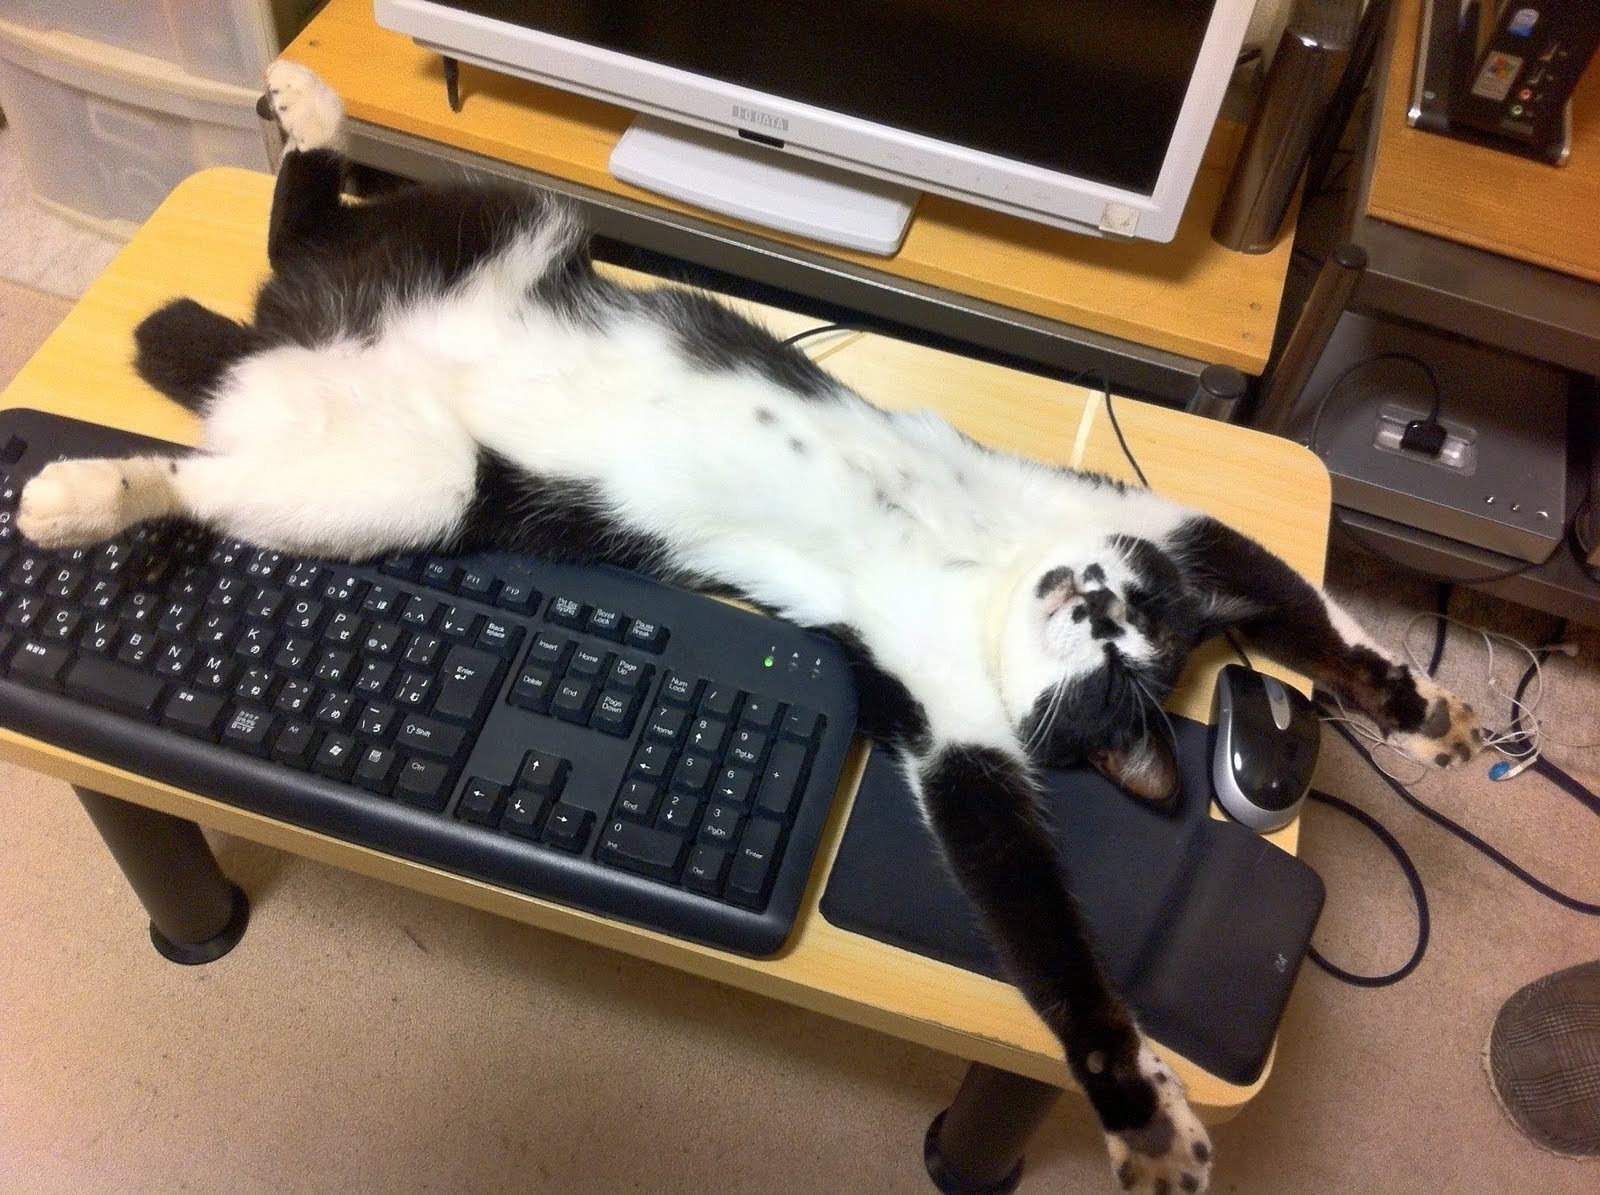 Котик с компьютером